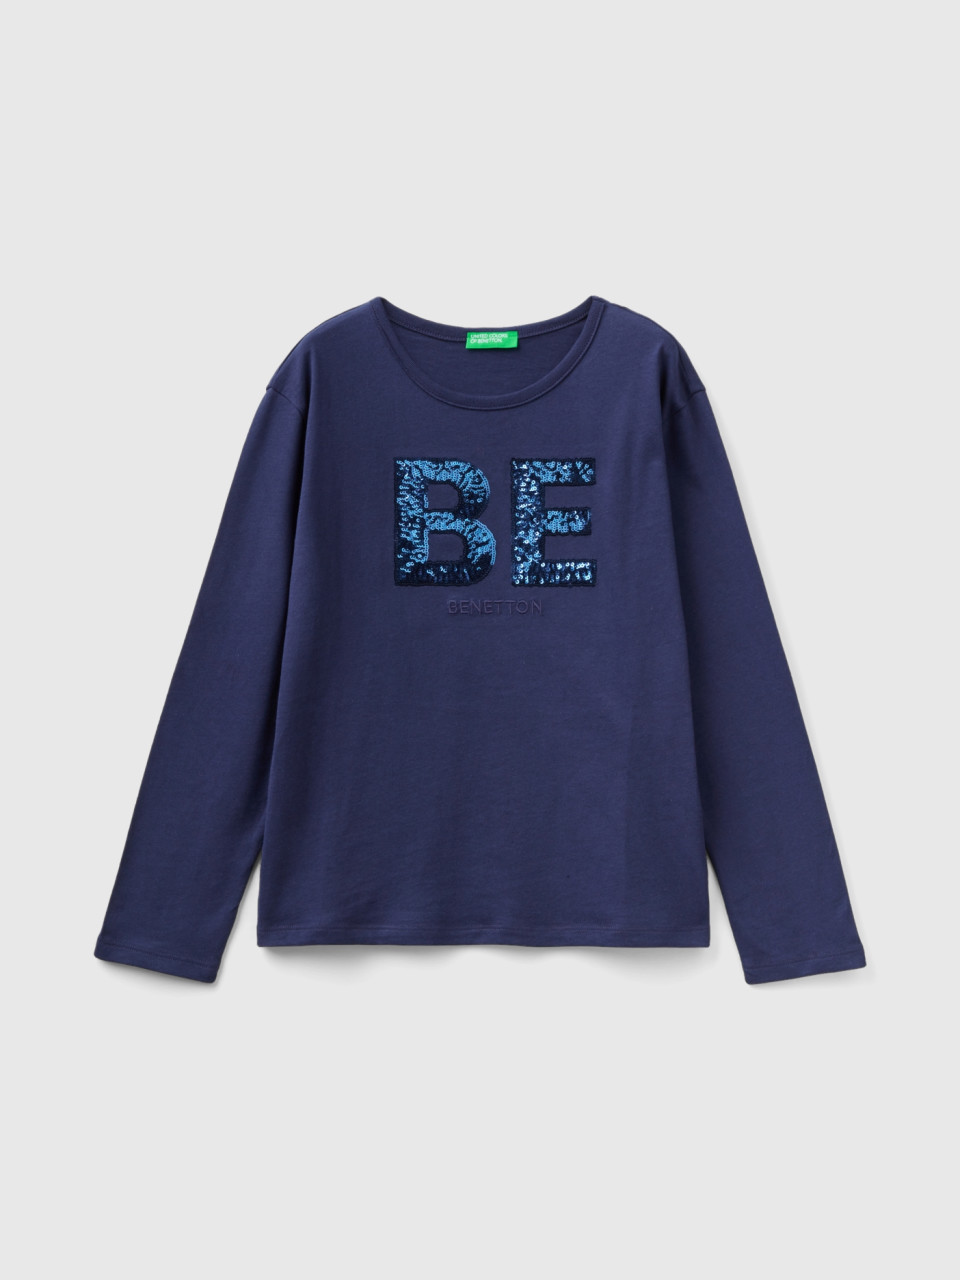 Benetton, T-shirt In Warm Organic Cotton With Sequins, Dark Blue, Kids